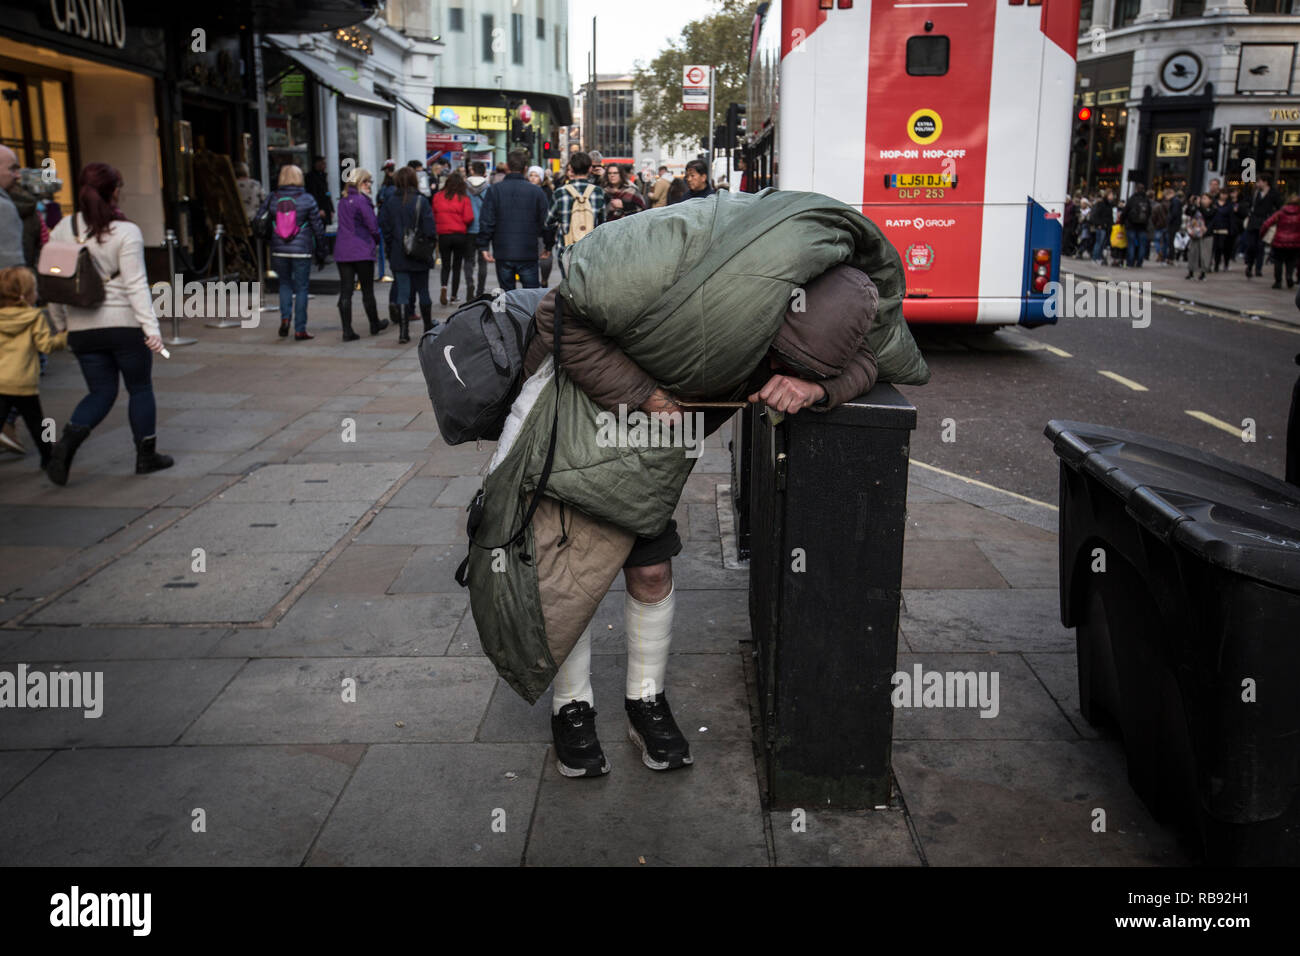 Traversina ruvida lottando per portare i suoi averi e camminare lungo il marciapiede in Trafalgar Square e zona del Central London, England, Regno Unito Foto Stock